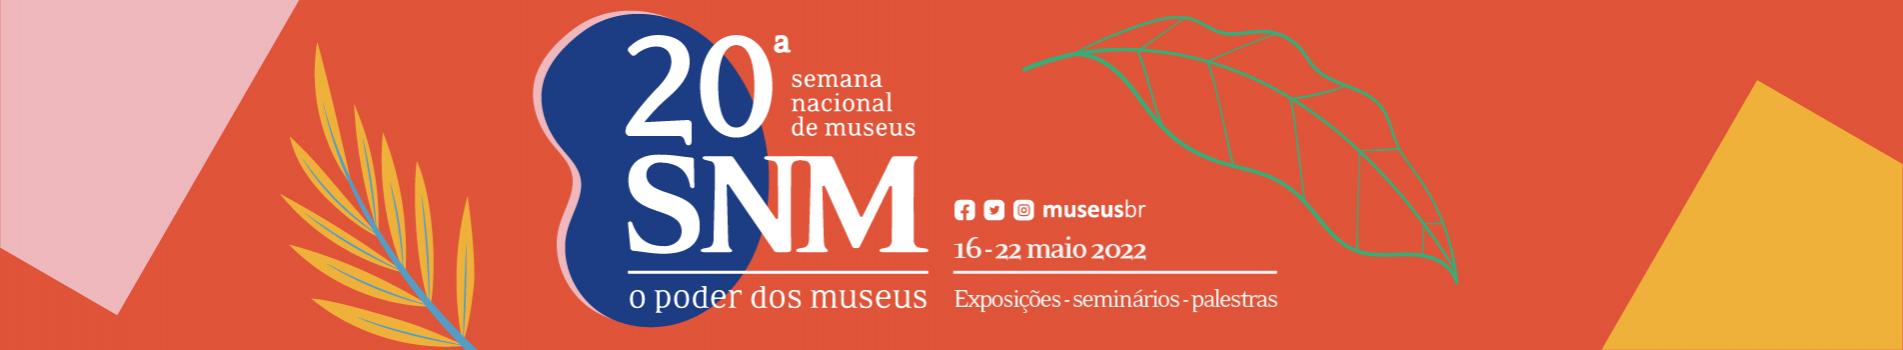 20ª Semana Nacional de Museus (SNM 2022)